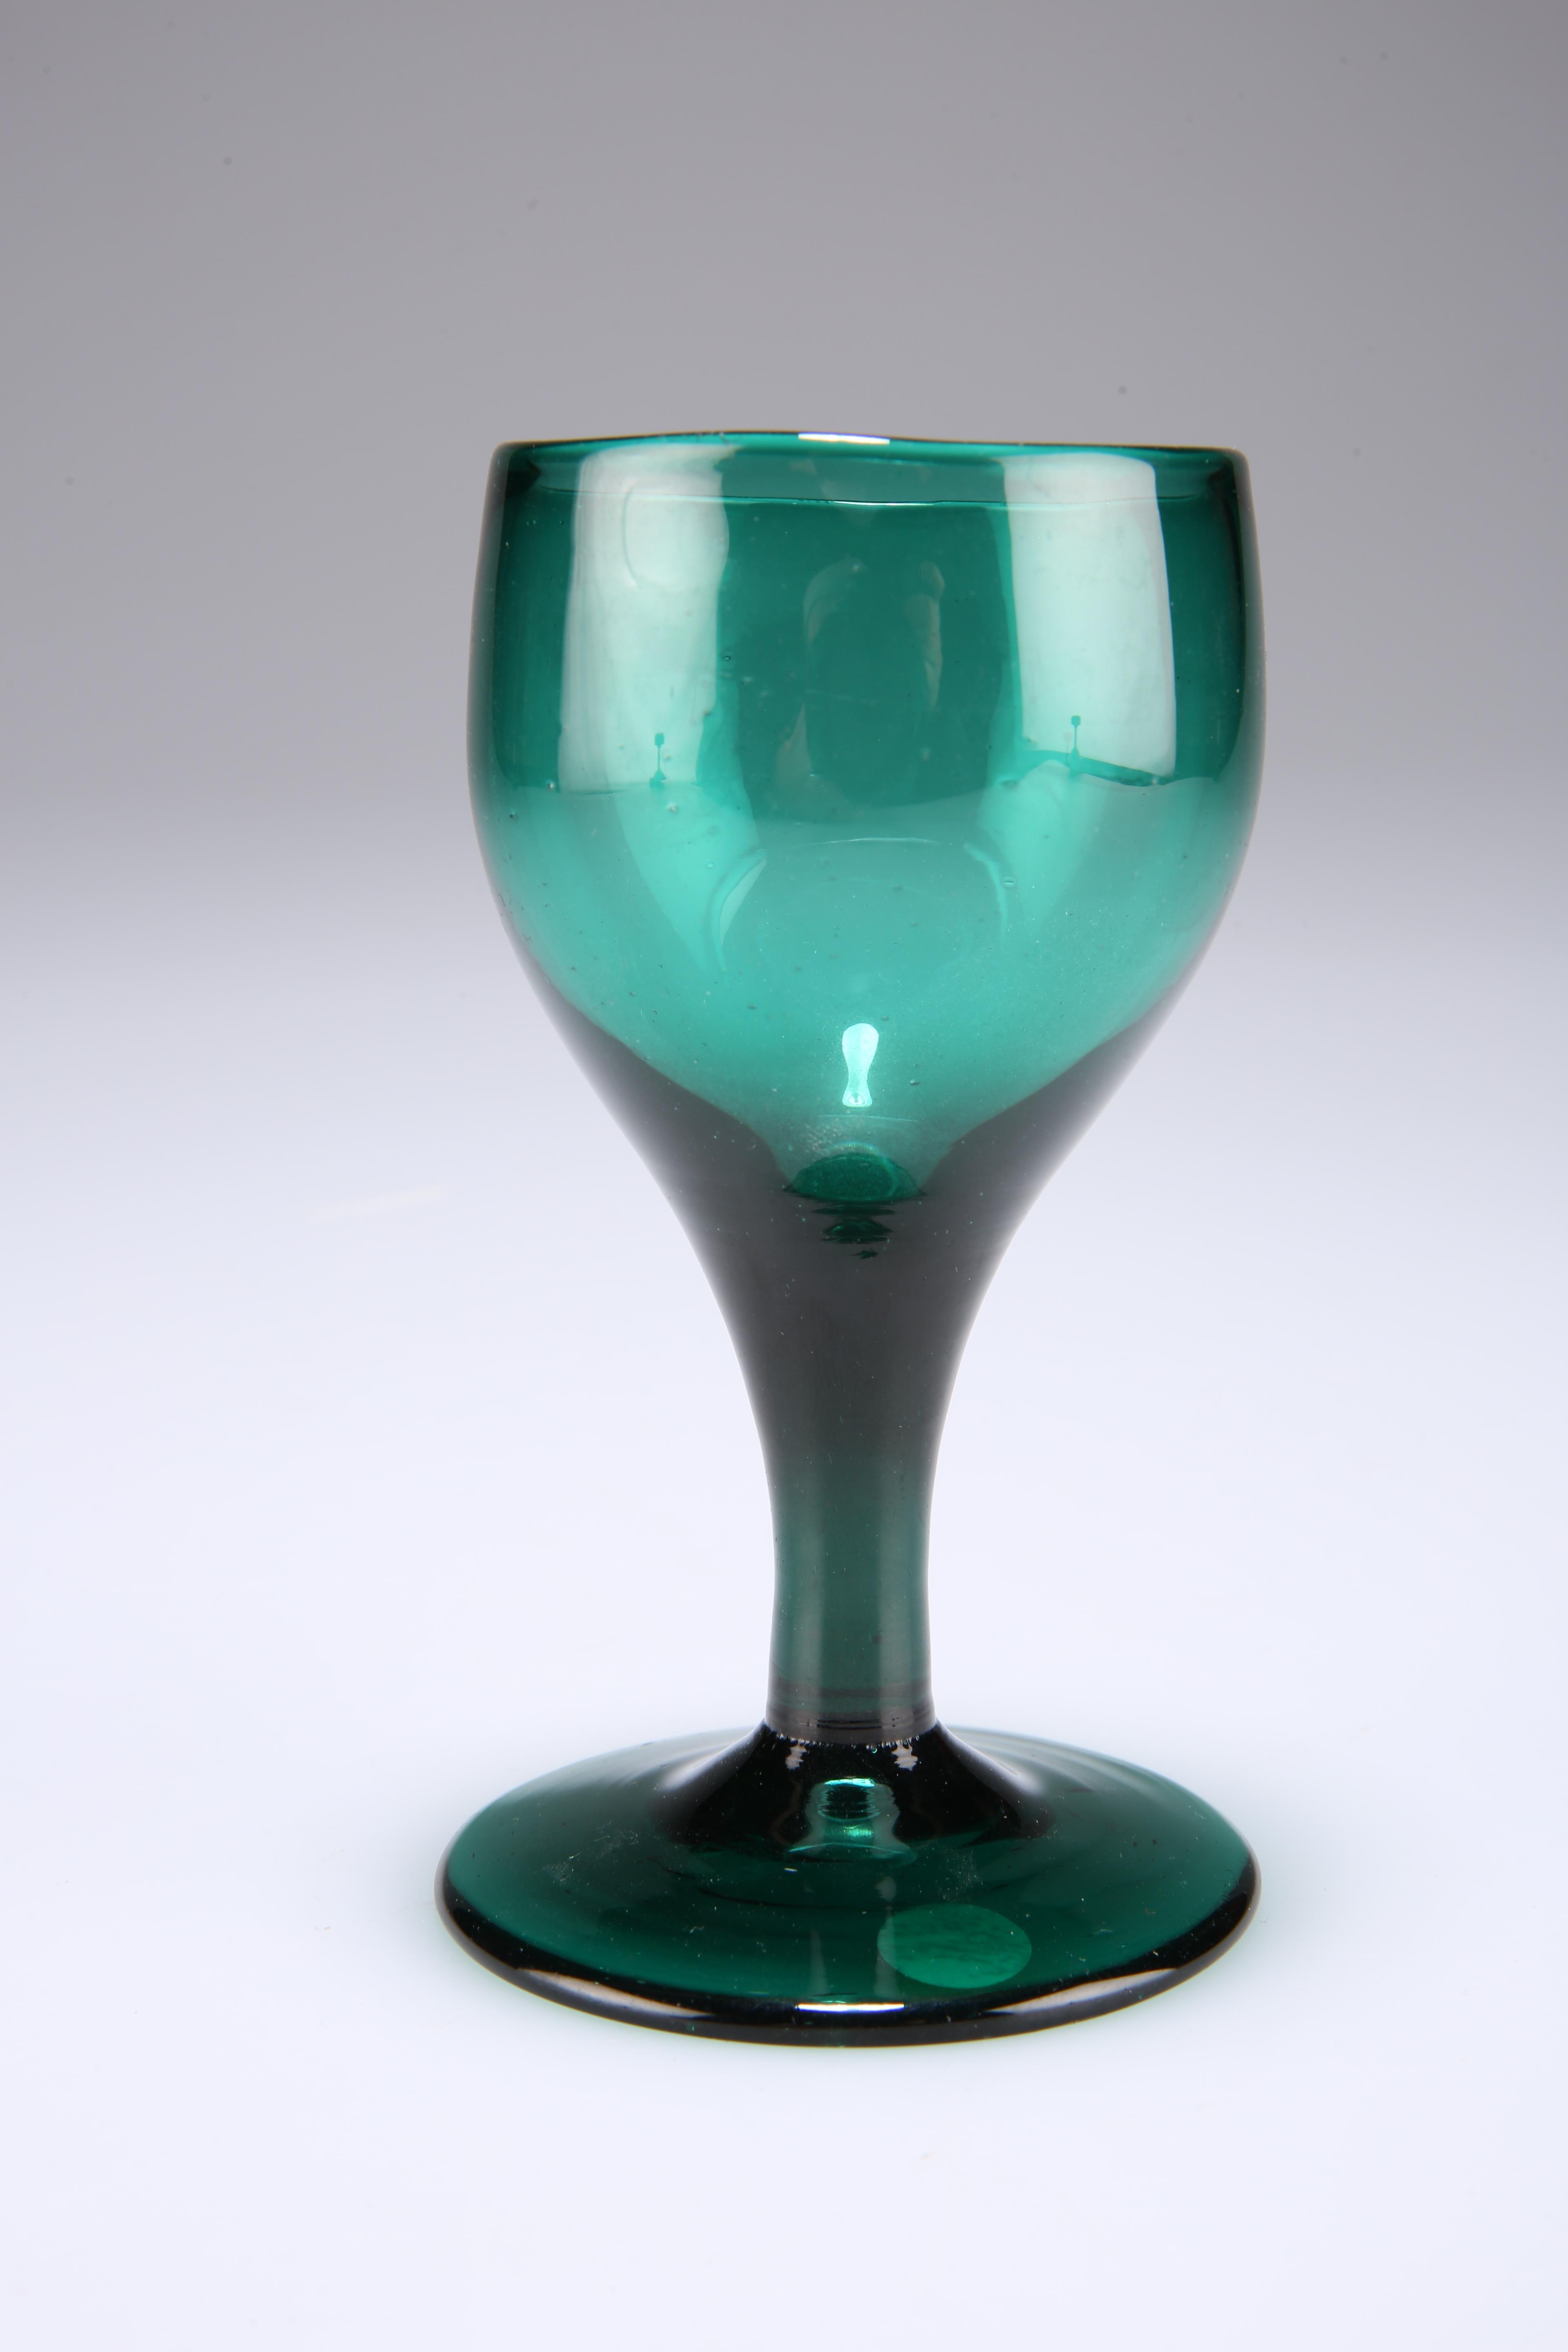 An 18th century deep green drinking glass, 12cm high